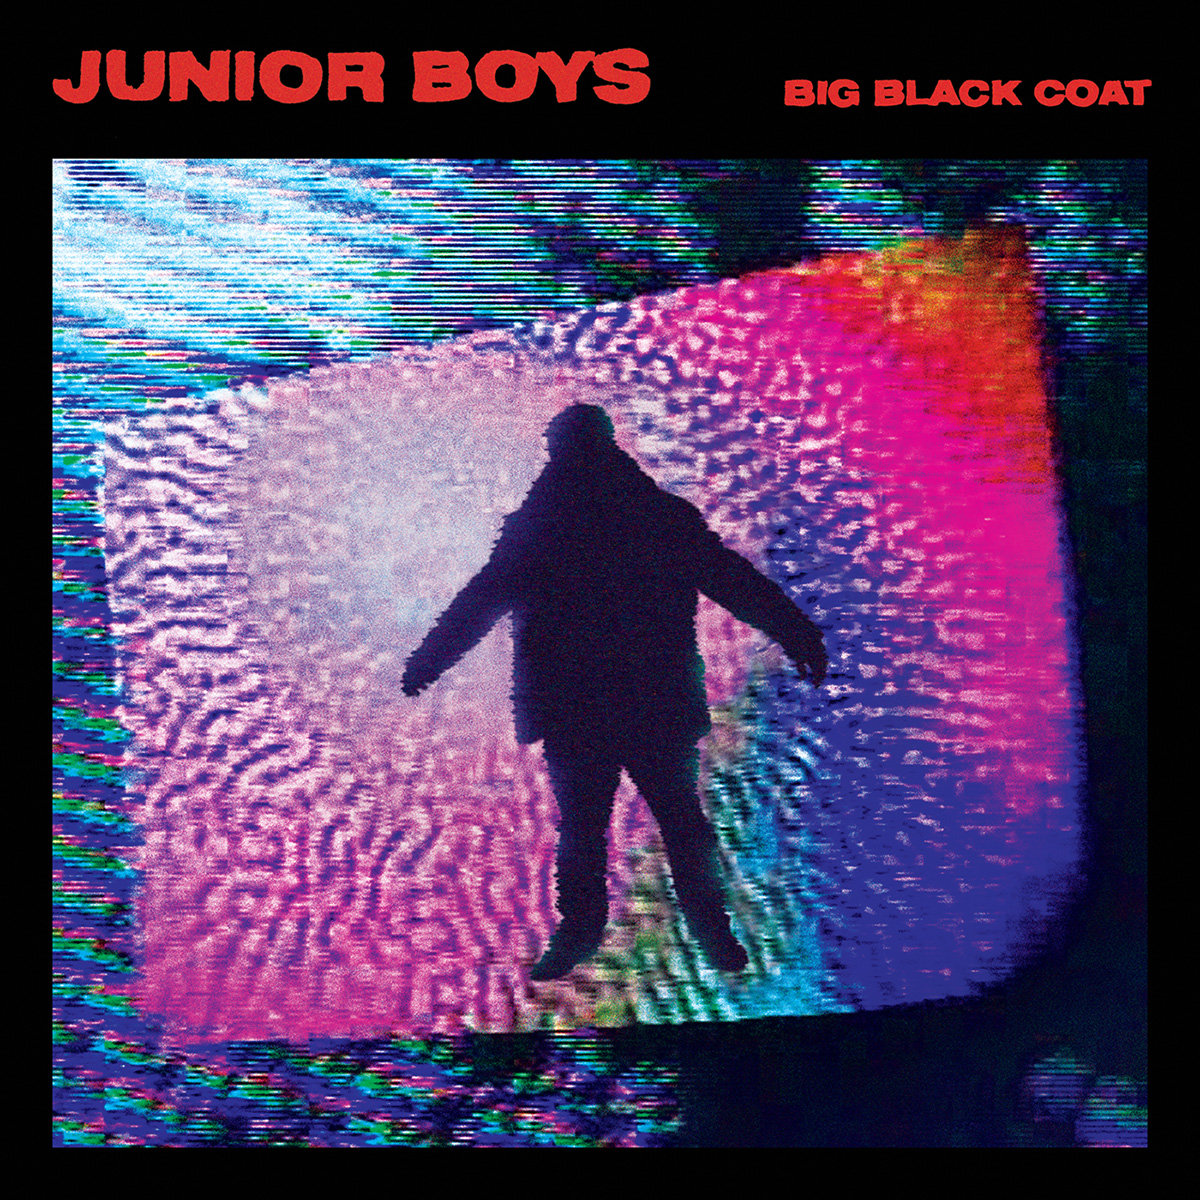 REVIEW: “Big Black Coat” – Junior Boys